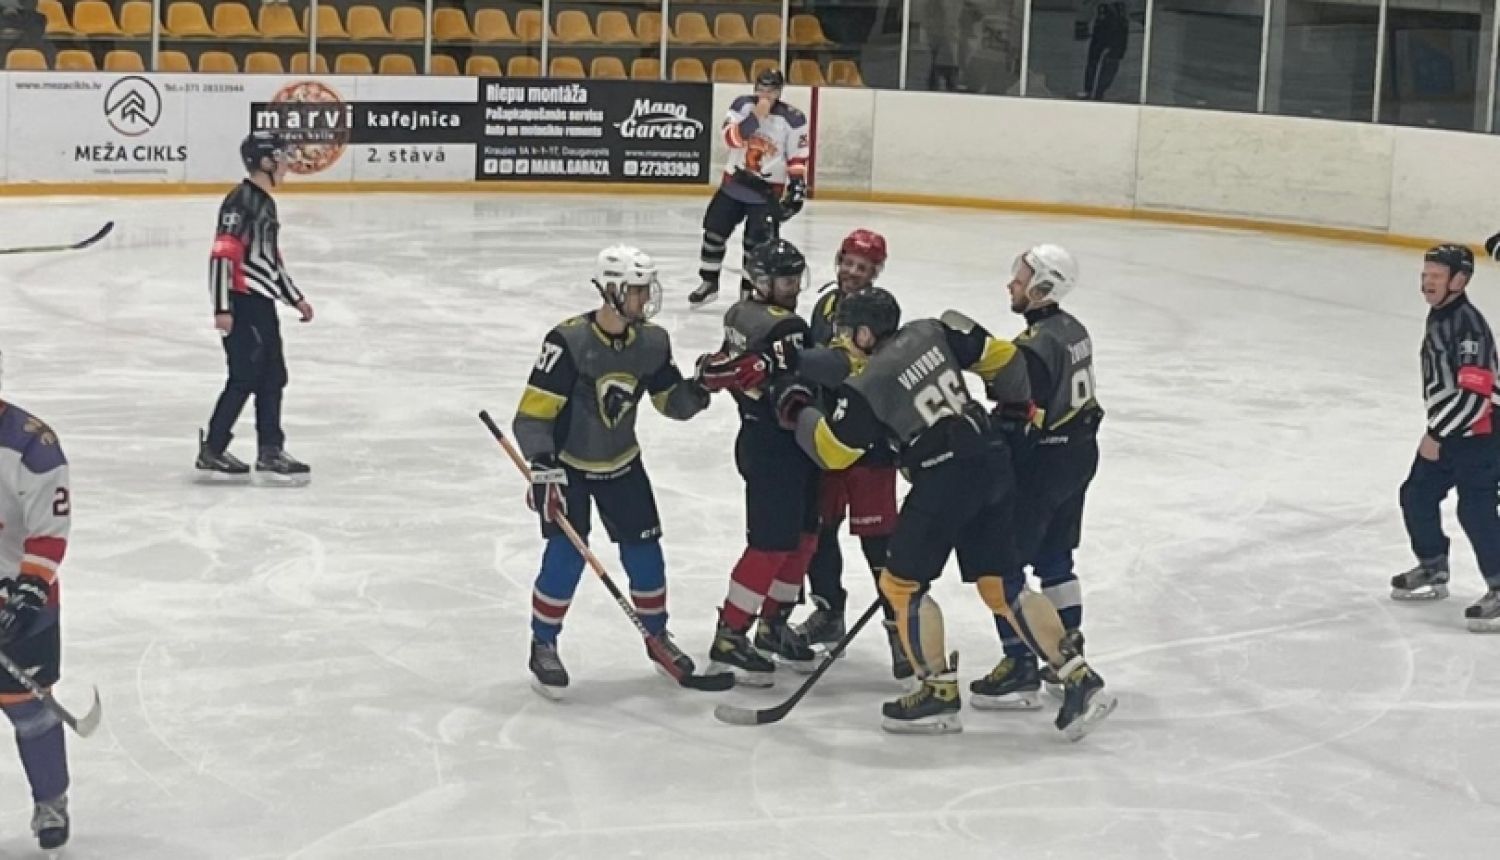 Preiļu hokeja komanda Daugavpils atklātajā amatieru hokeja čempionātā gūst uzvaru pār komandu "Fenikss" 